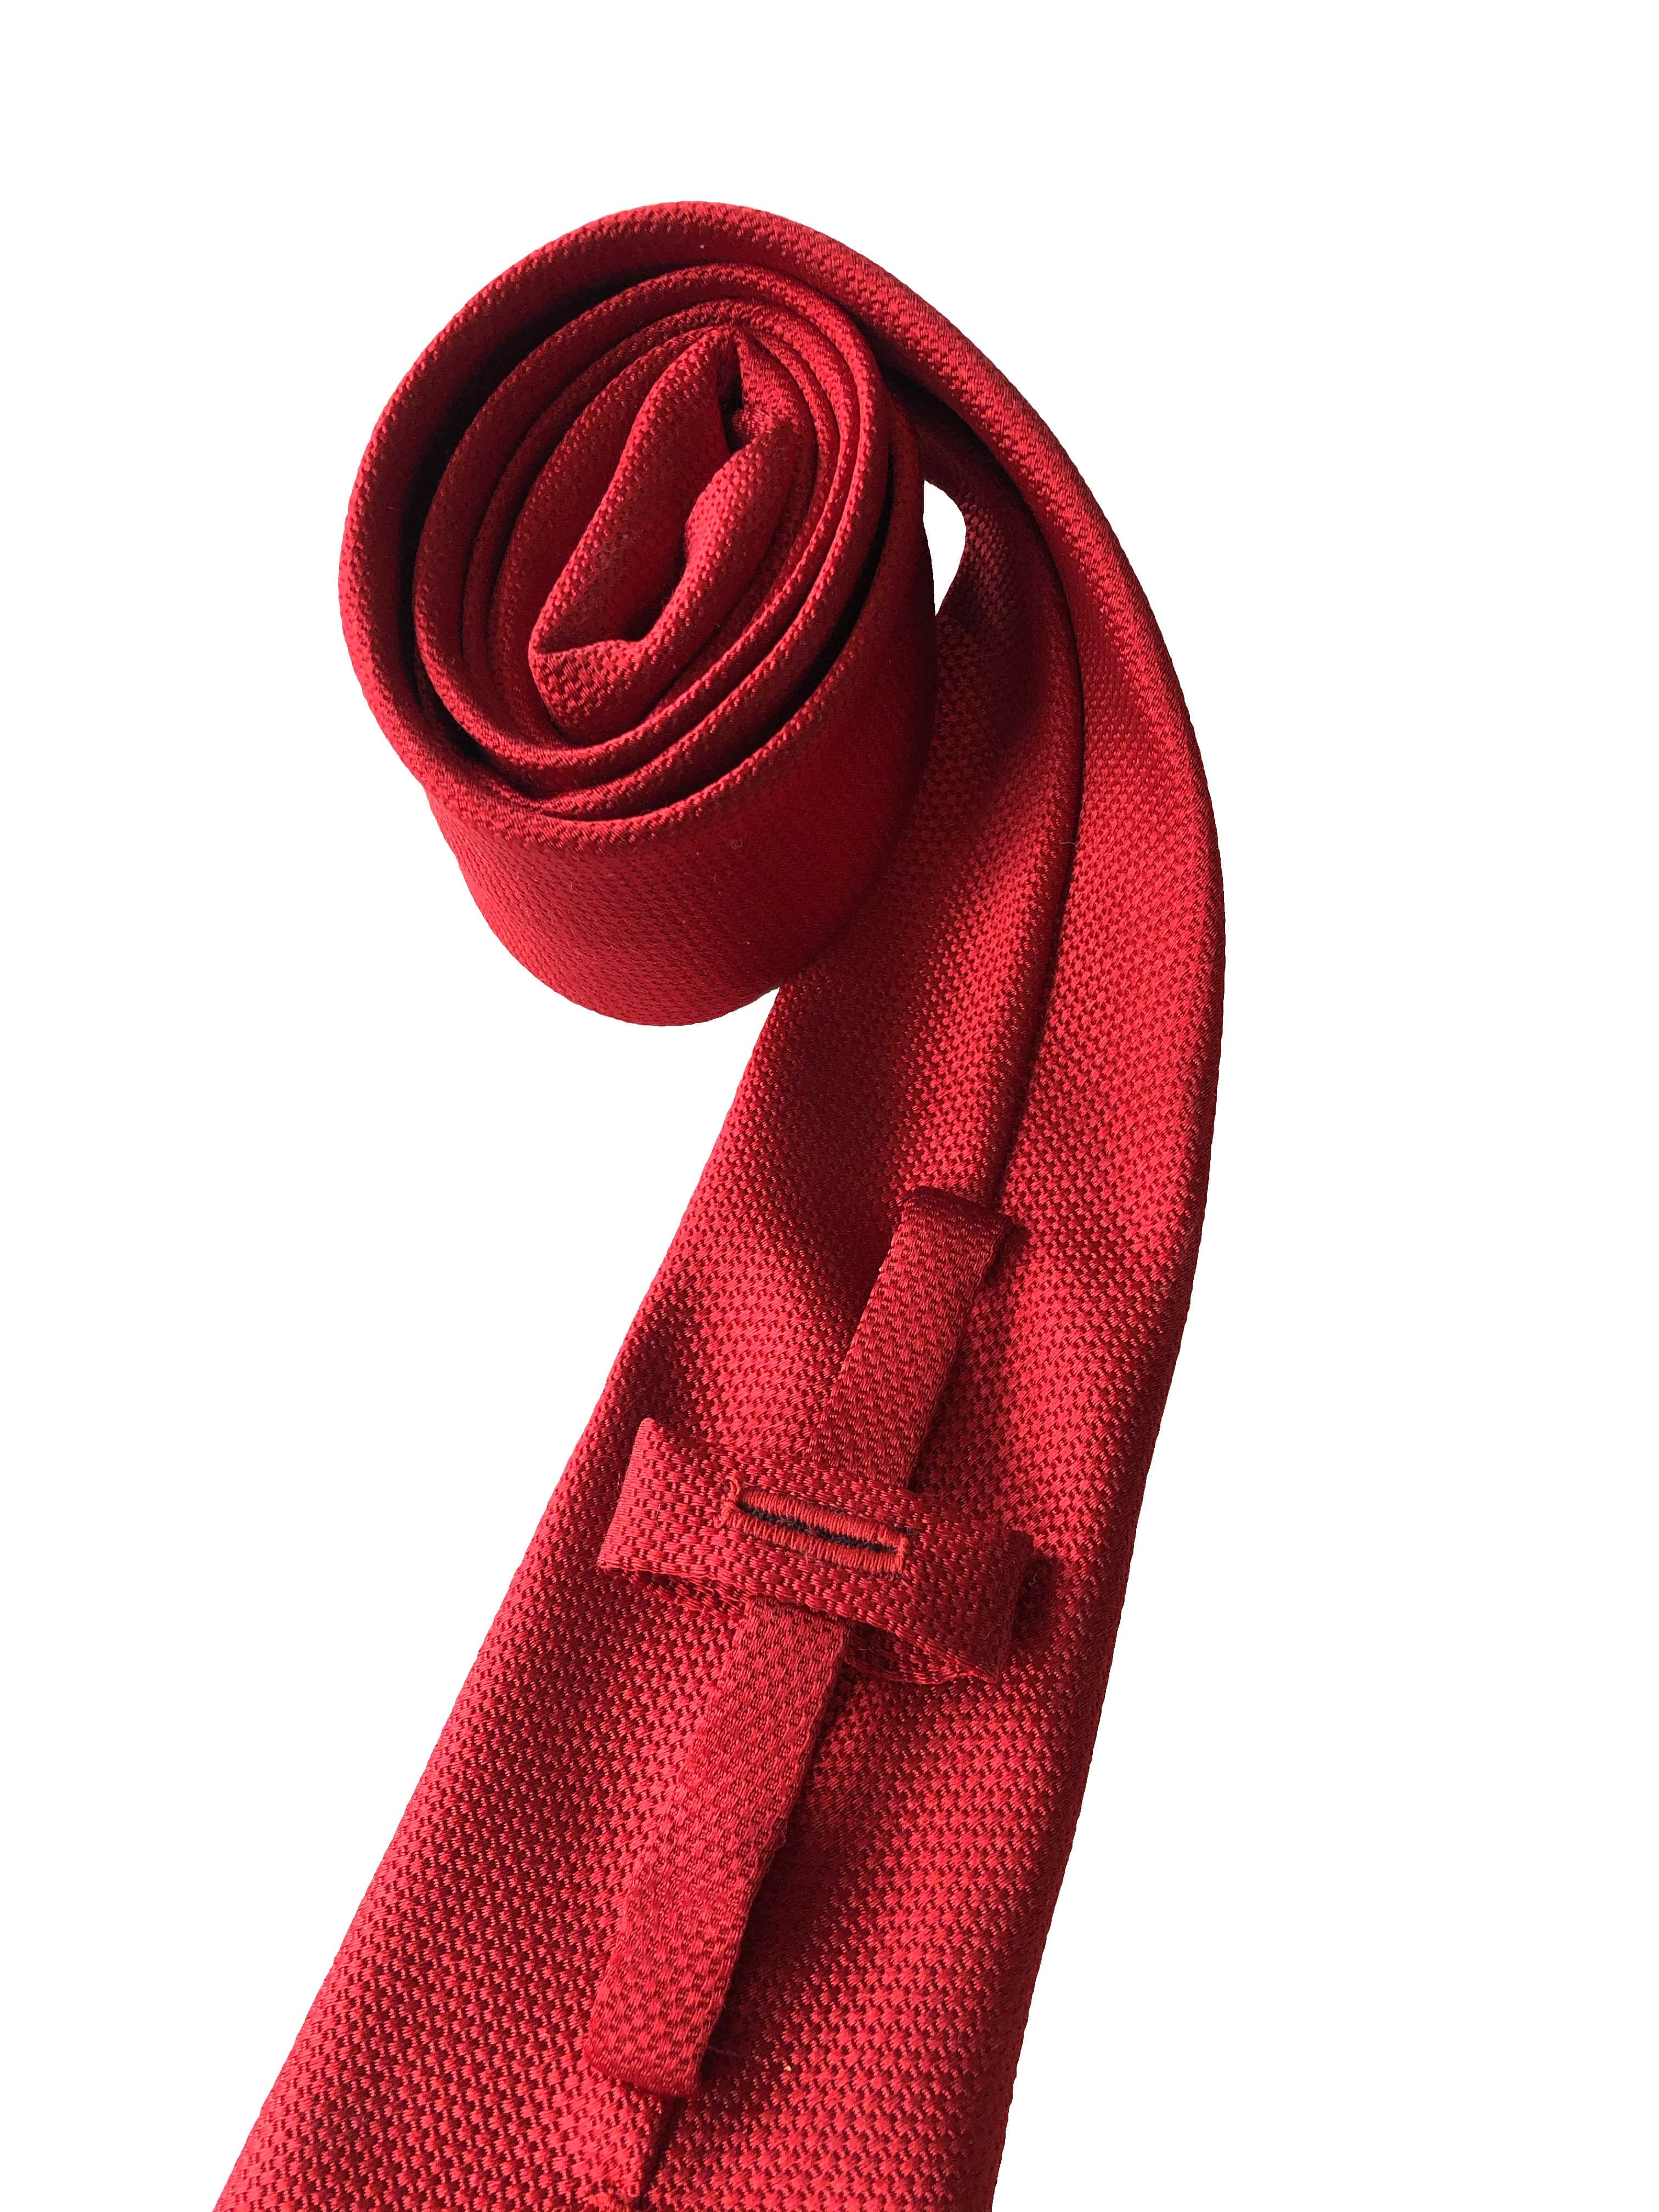 Valentin Red Silk Tie Handmade in Canada | COCHIC®